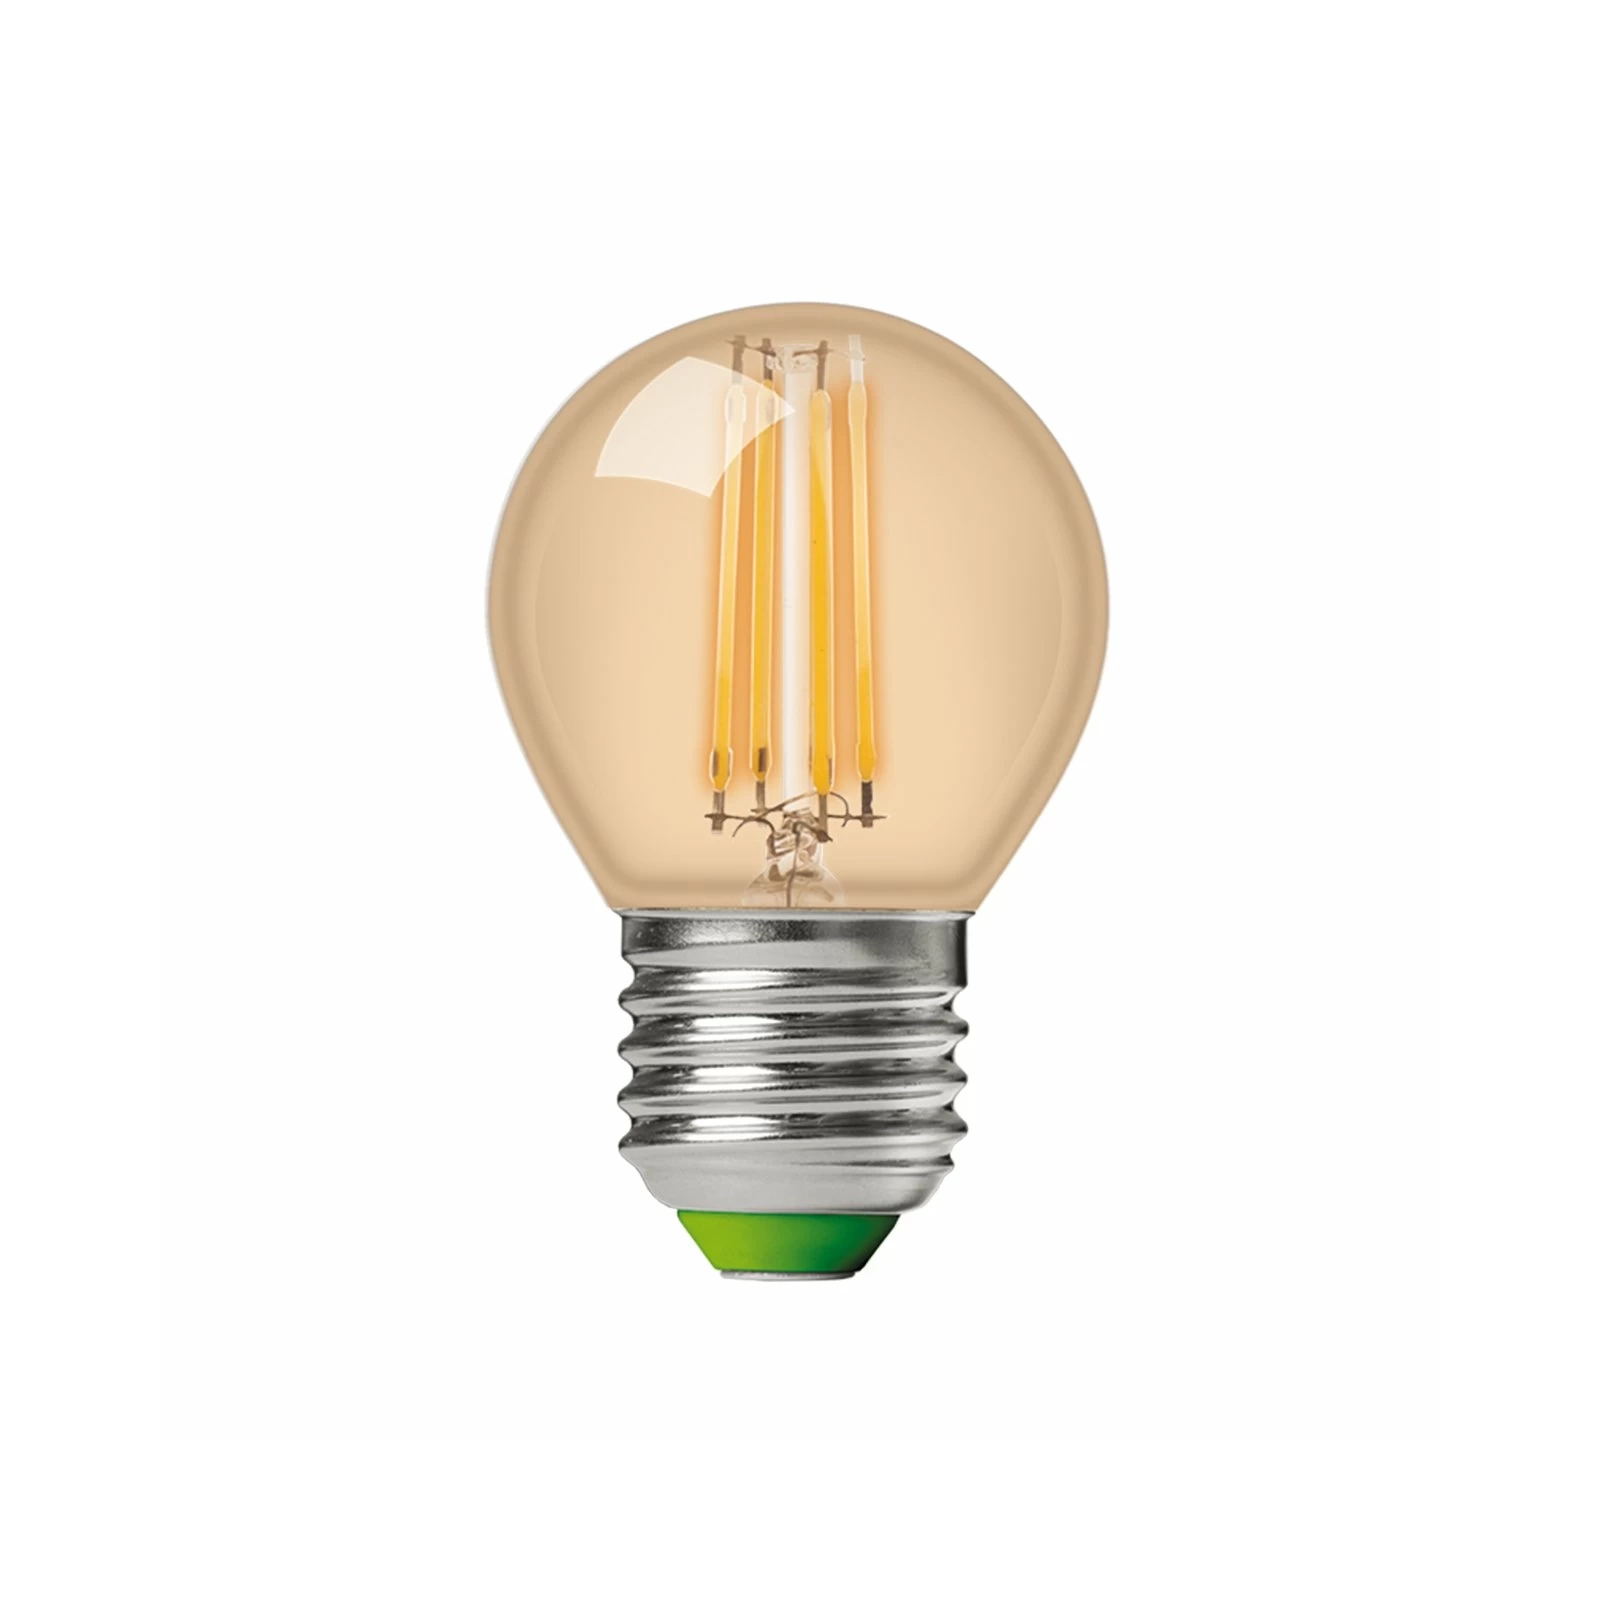 Лампочка Eurolamp LED G45 5W 530 Lm E27 4000K deco 2шт (MLP-LED-G45-05274(Amber)) изображение 2